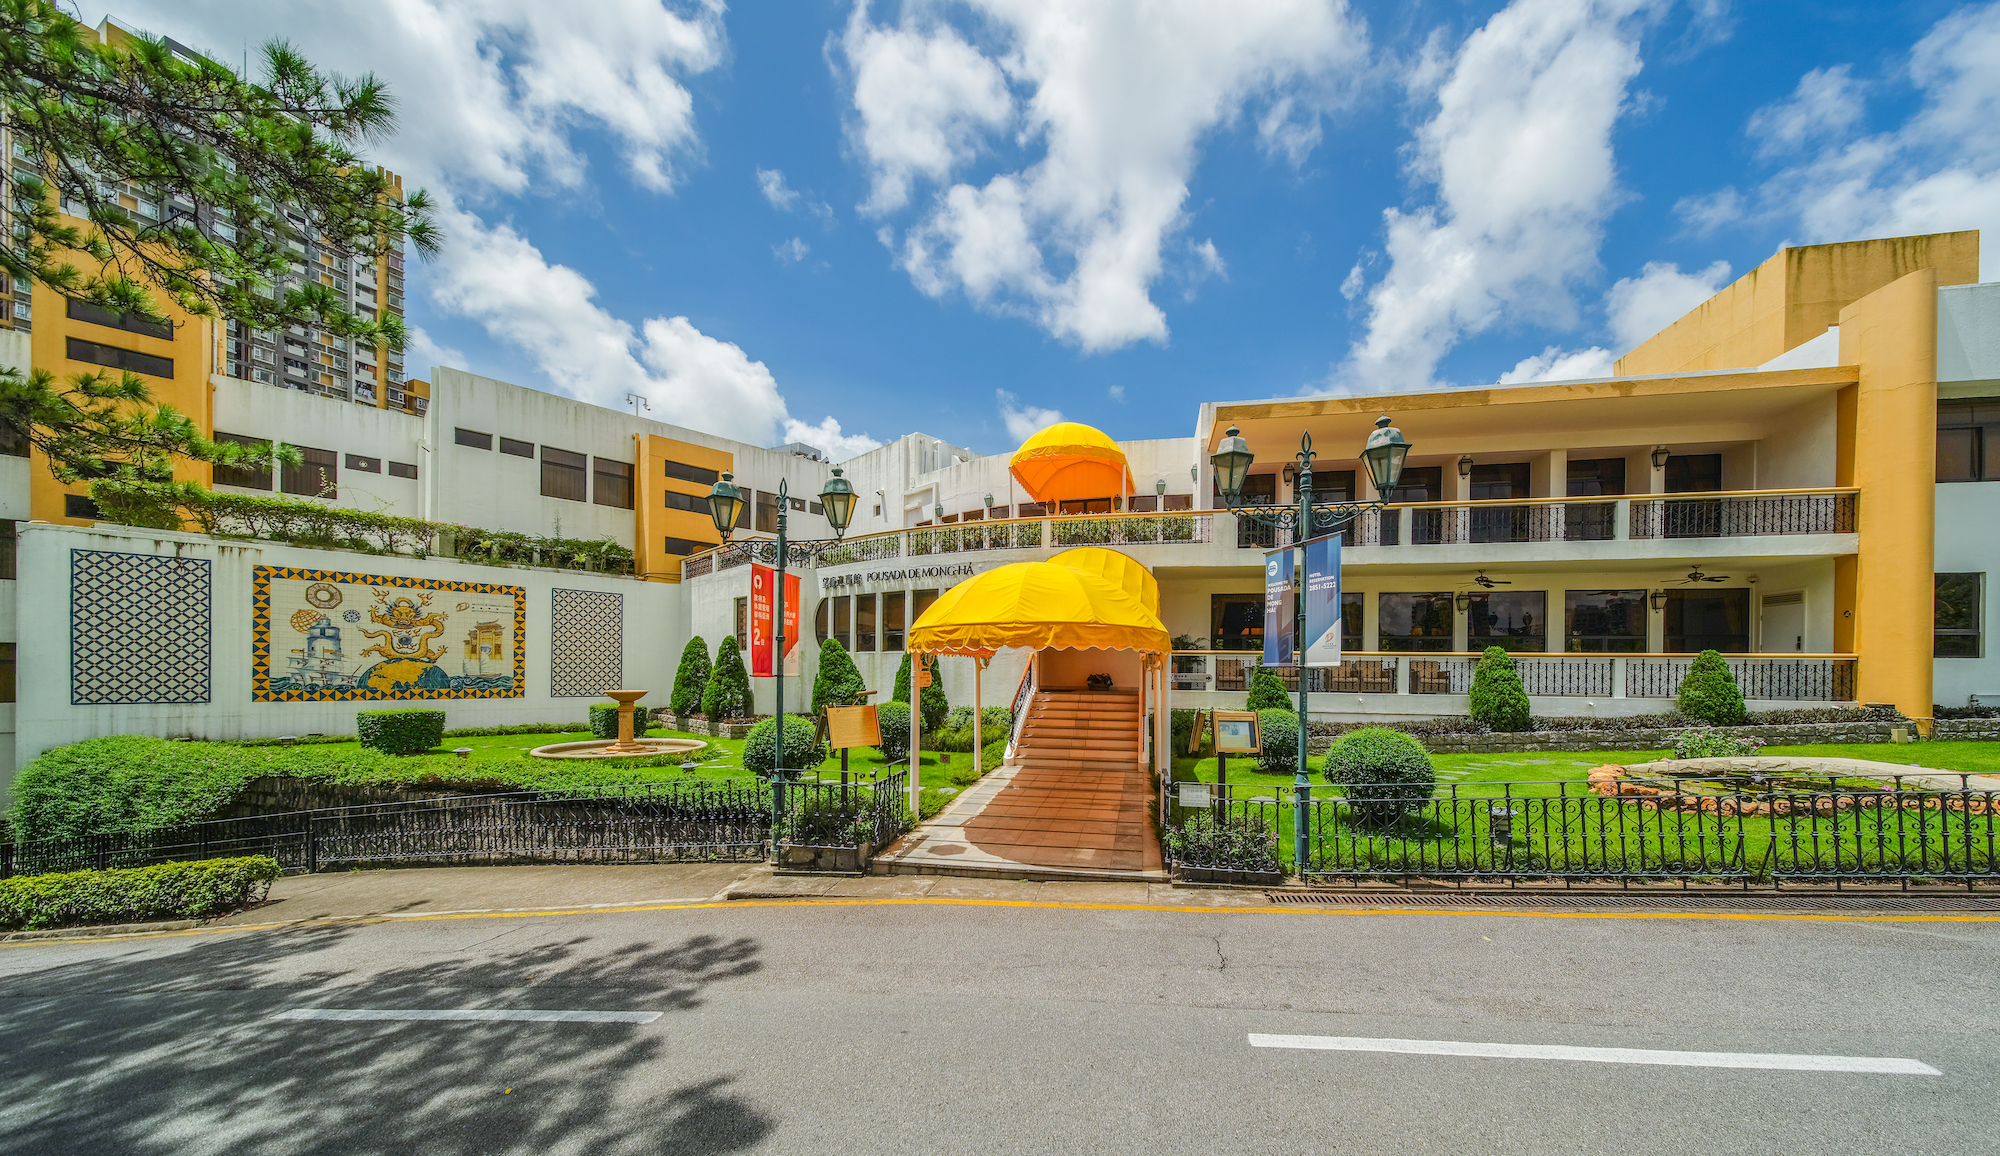 Pousada de Mong-Há serves as the school’s educational hotel